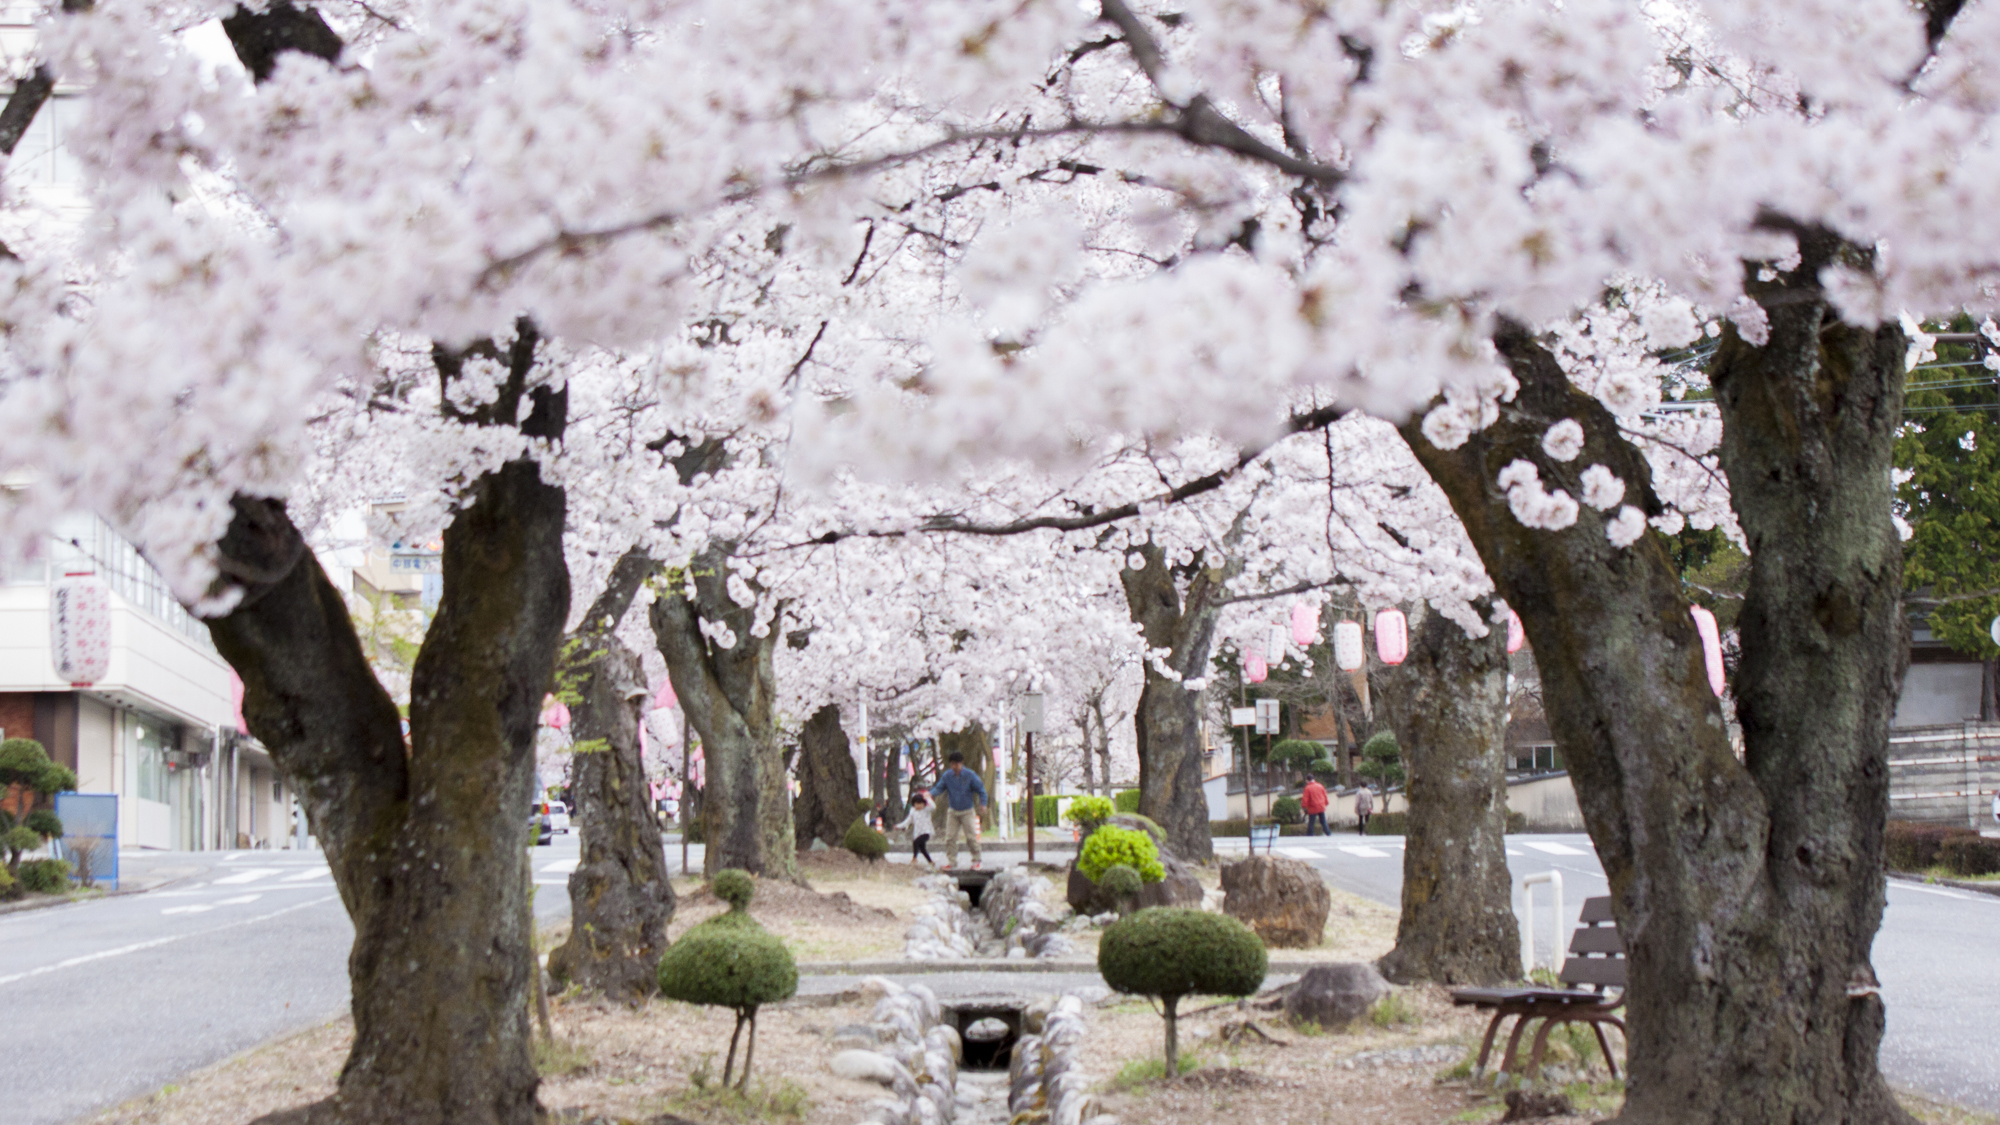 □【飯田の桜・大宮通り桜並木】大宮神社までの約700mに約150本のソメイヨシノ・彼岸桜の桜並木が